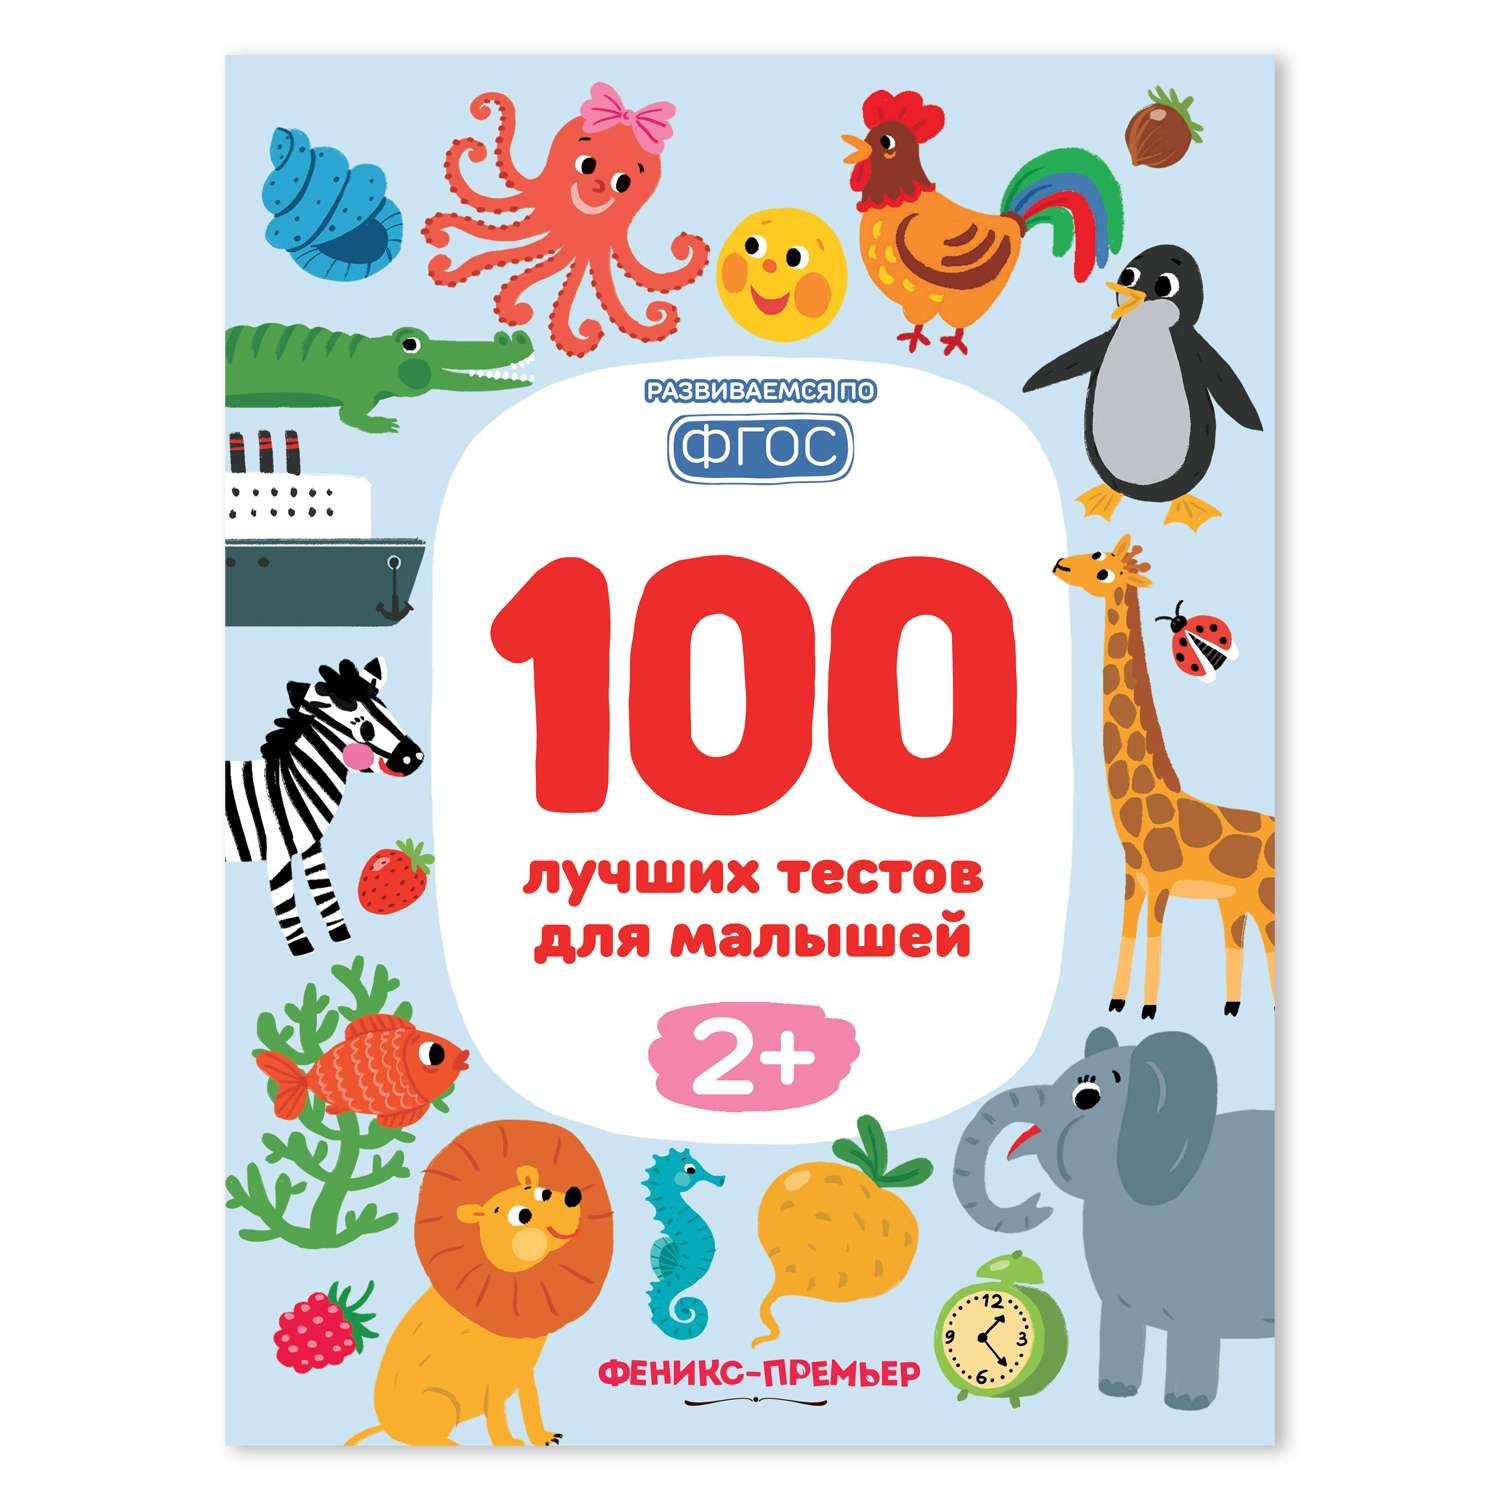 Книга Феникс Премьер 100 лучших тестов для малышей 2+ : Развивающая книга - фото 1